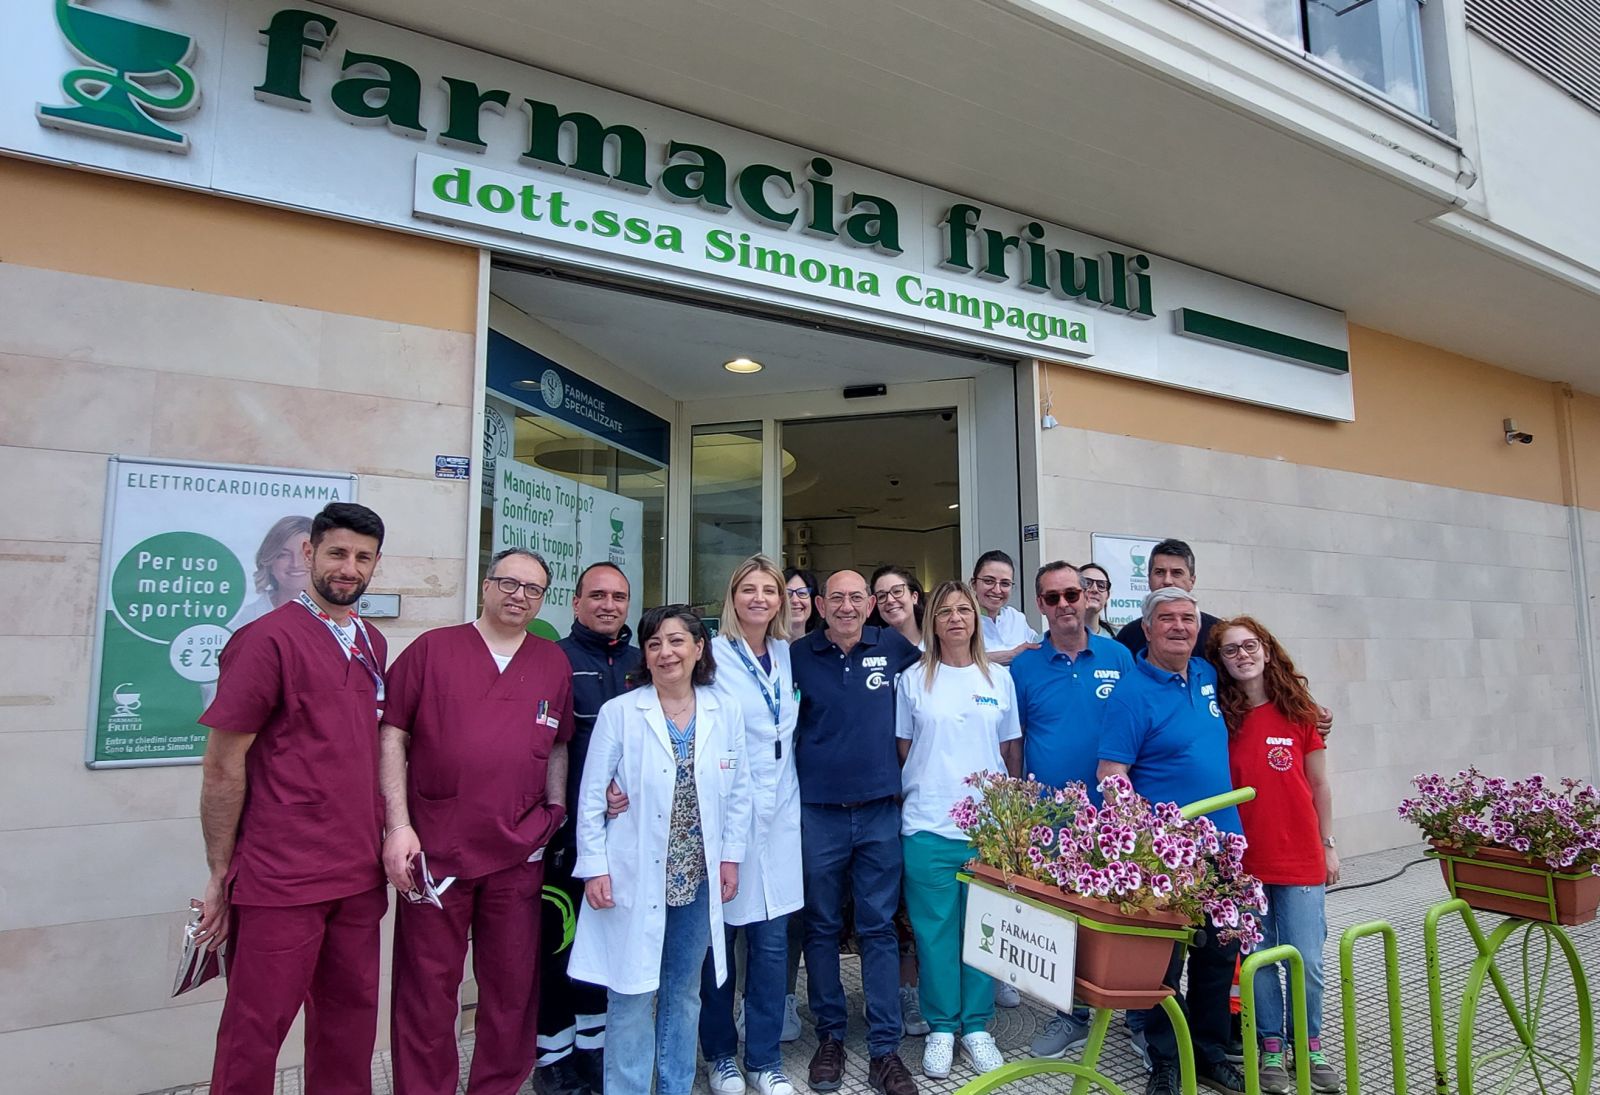 Donazione con Farmacia Friuli